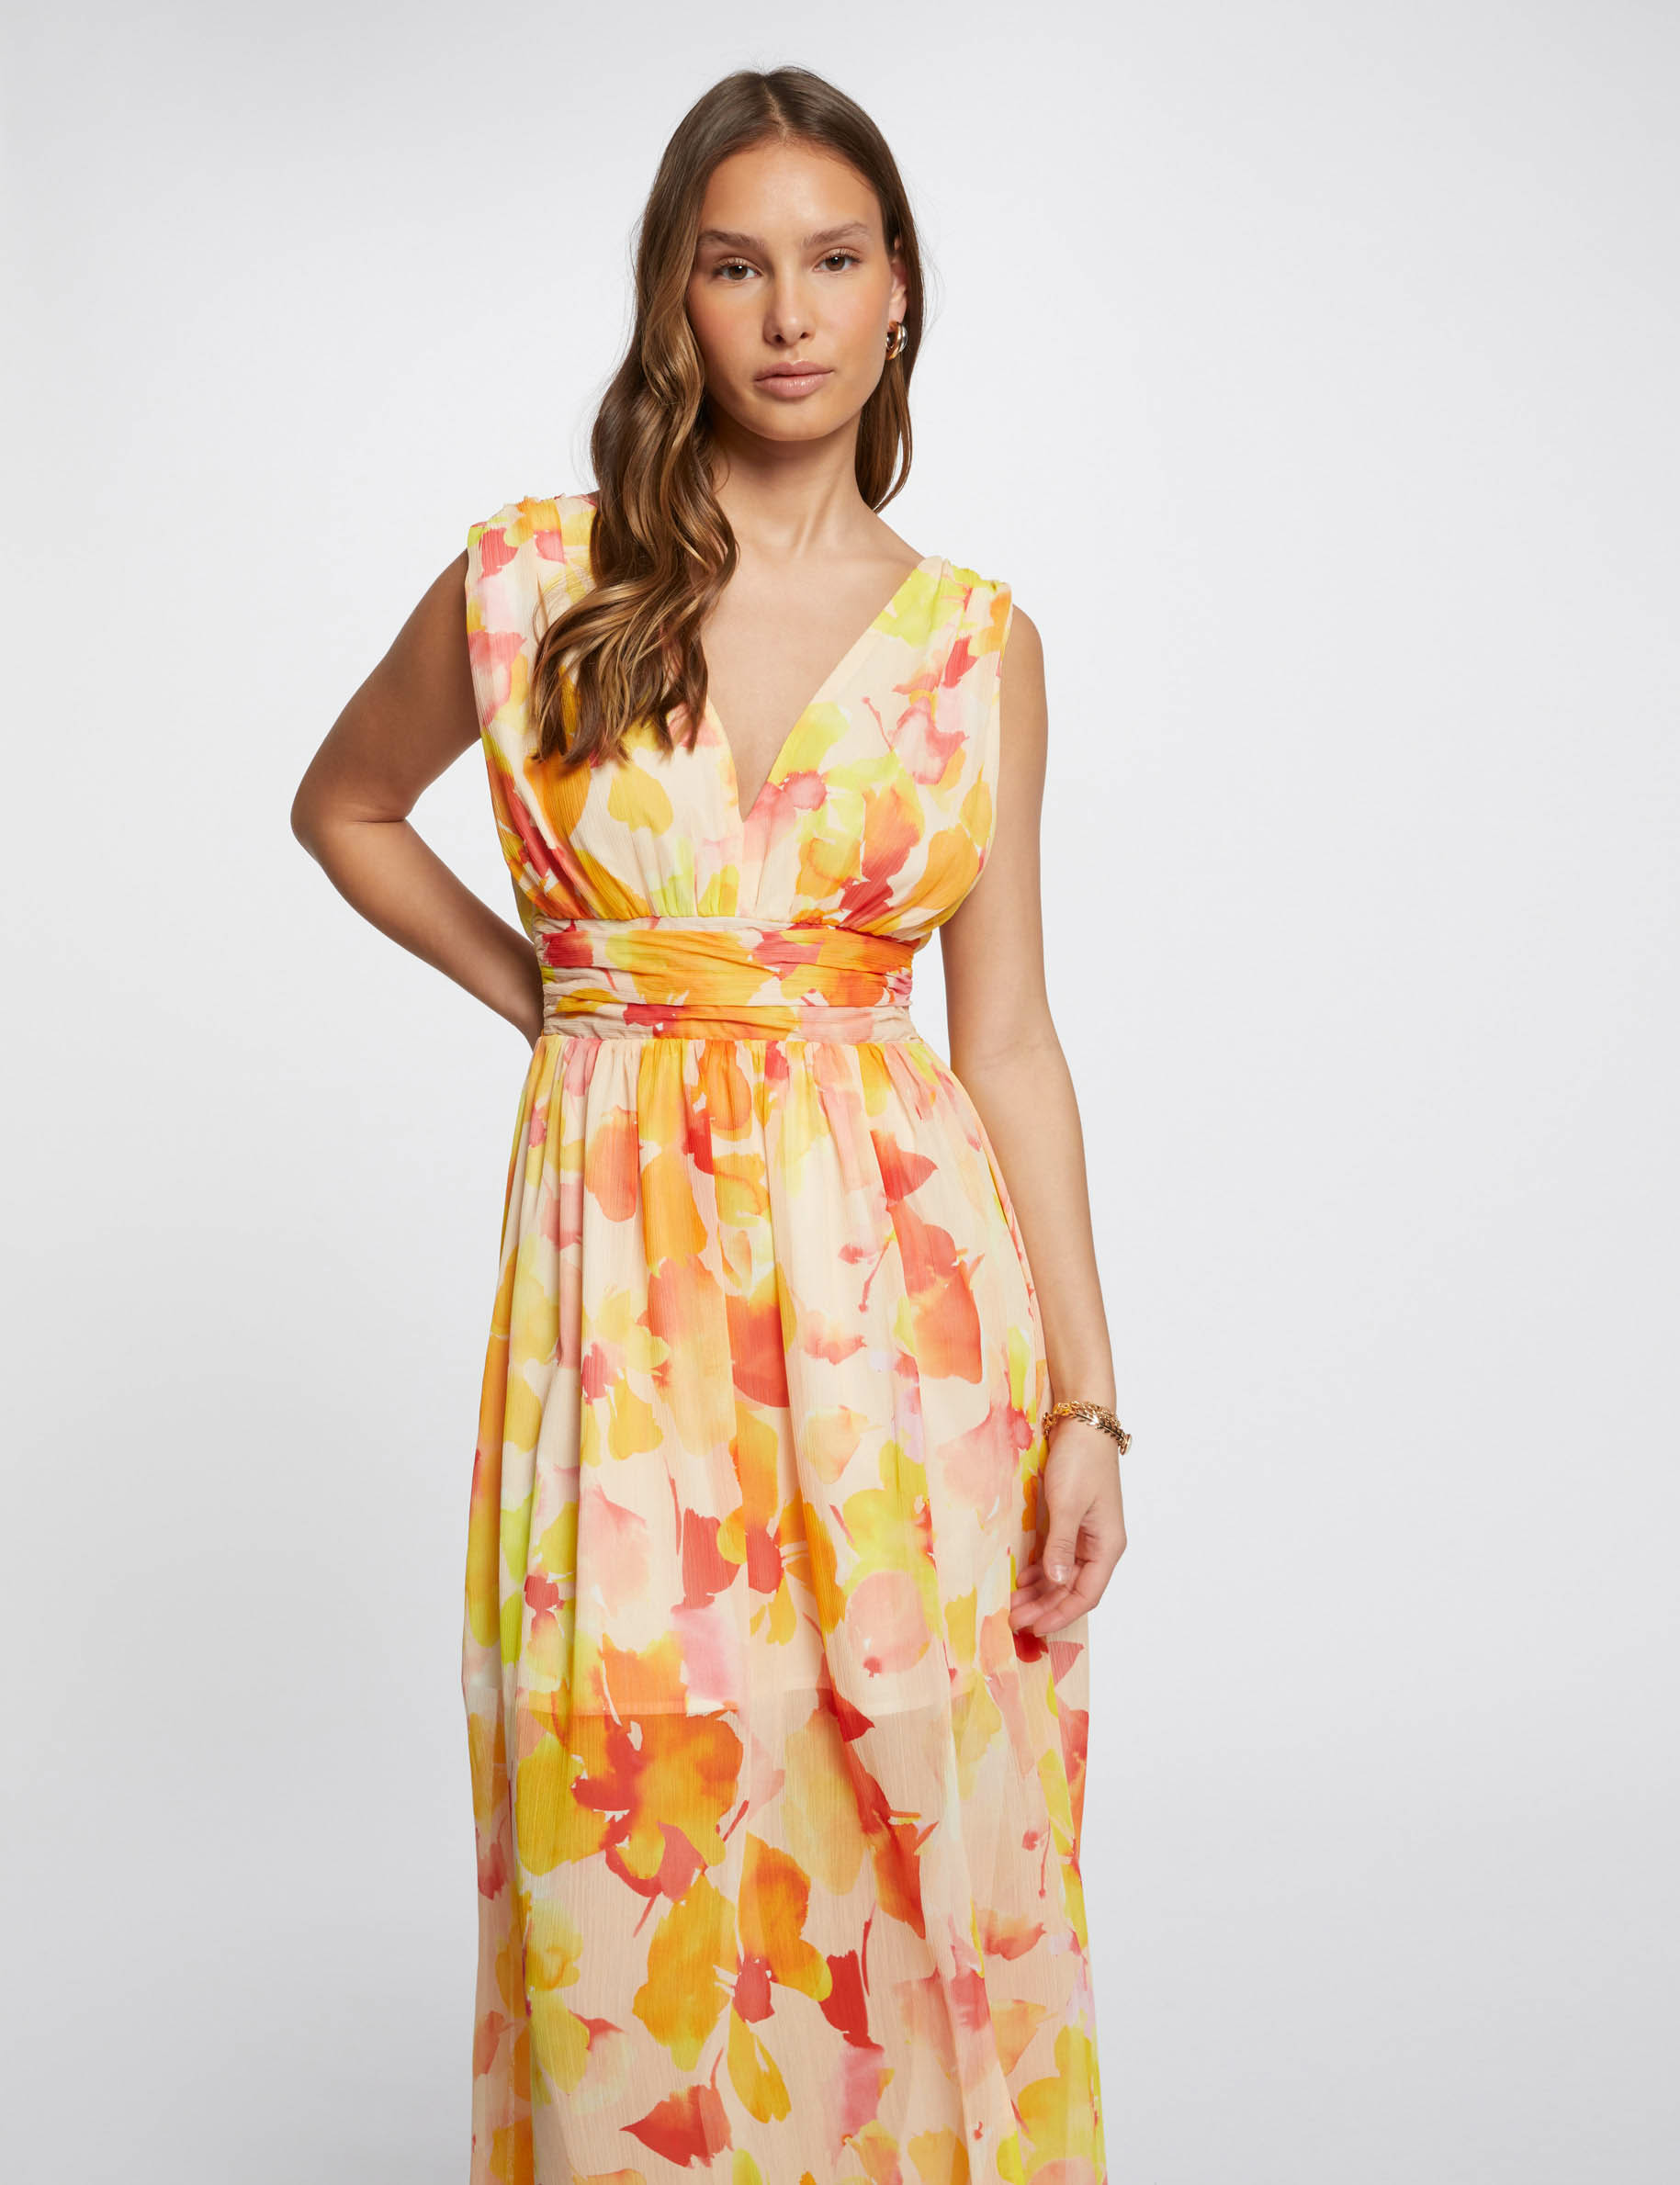 Lange rechte jurk met print meerkleurig vrouw